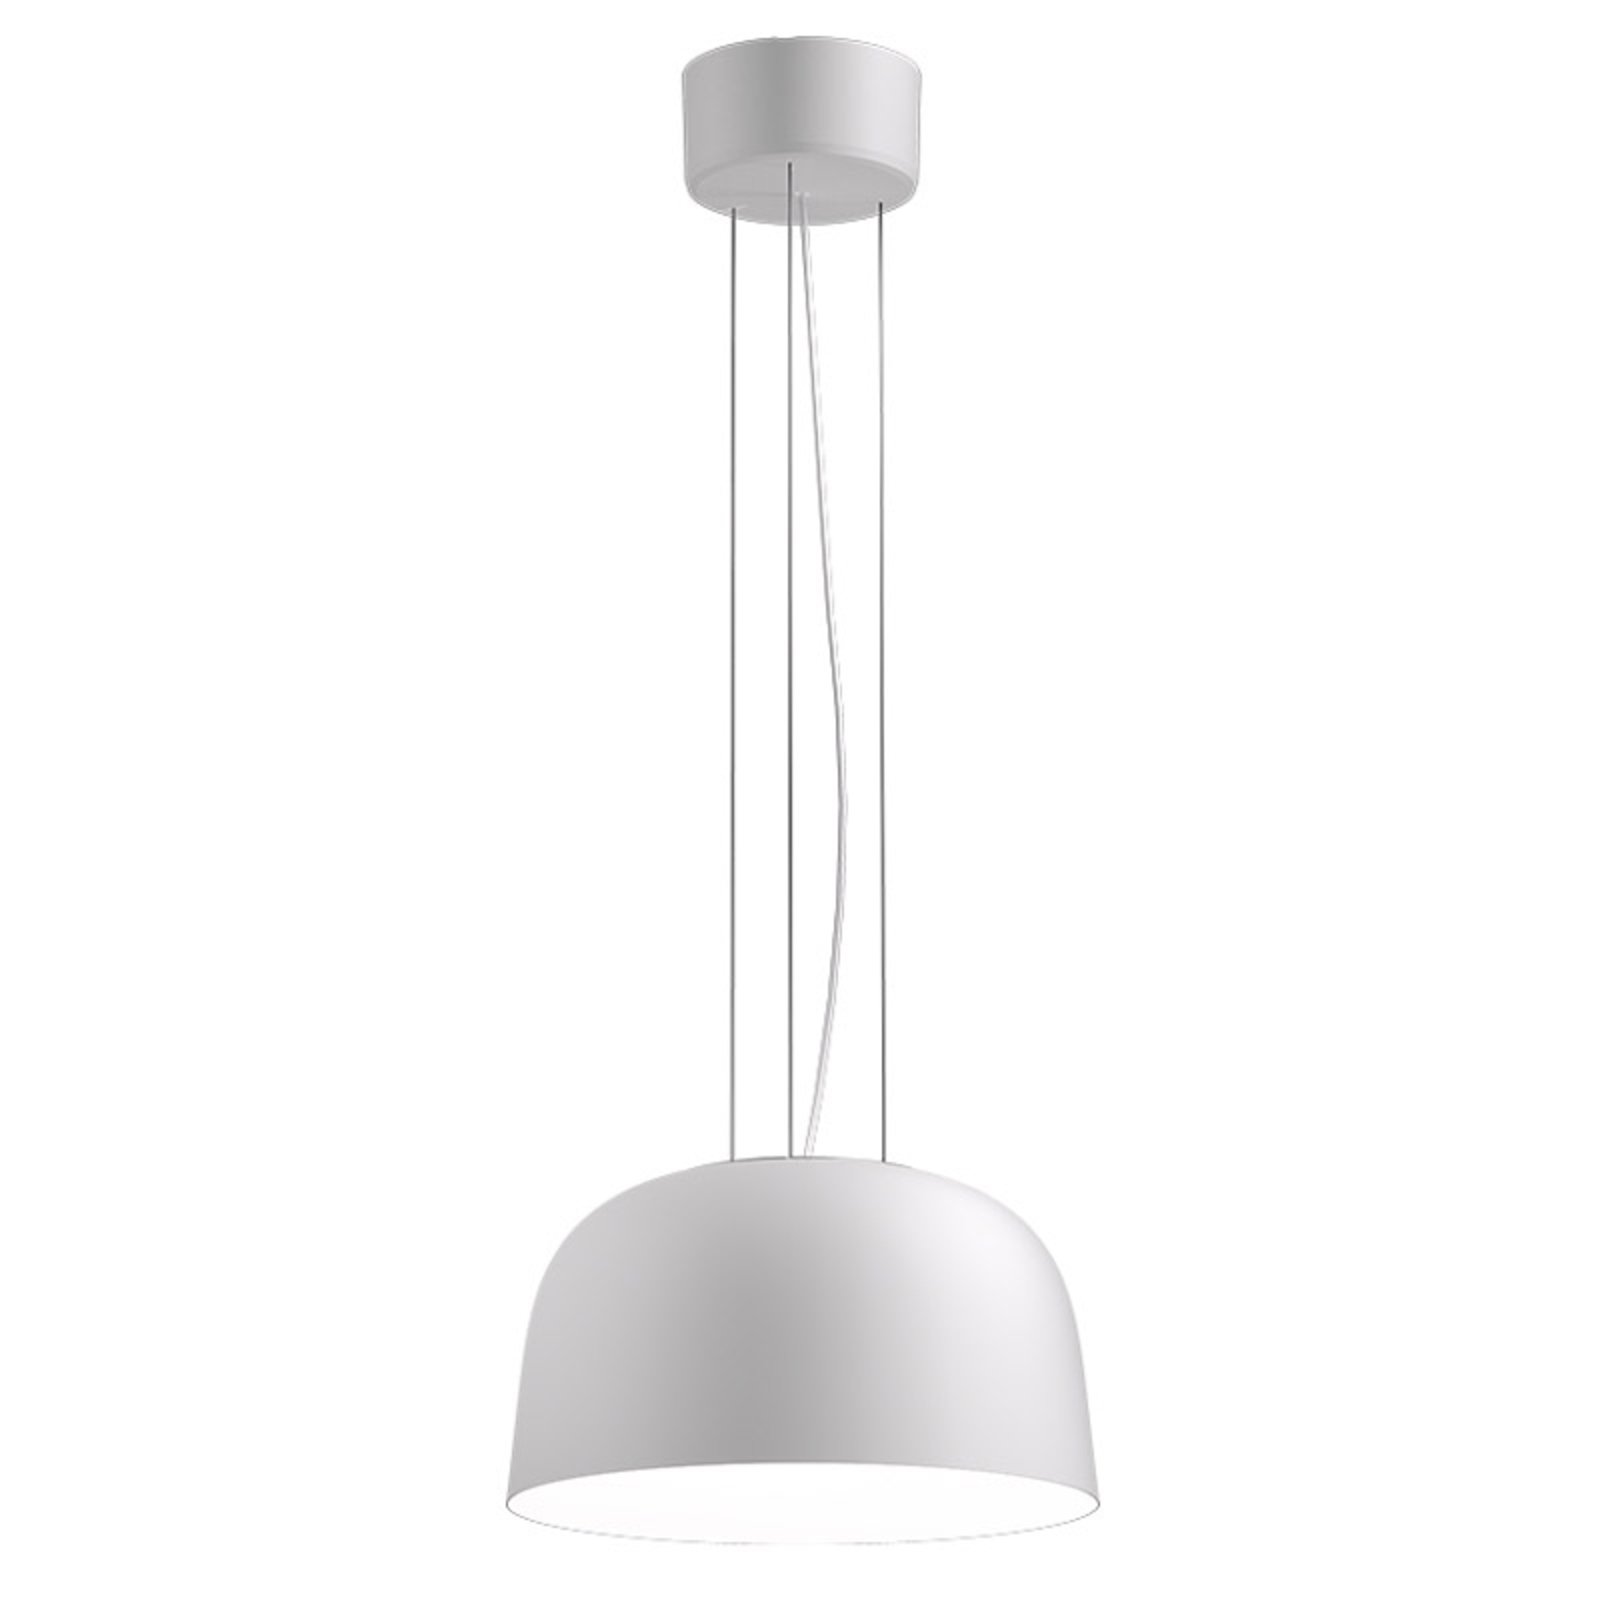 LED pakabinamas šviestuvas Sva 840 Dali Ø 35,6cm baltas